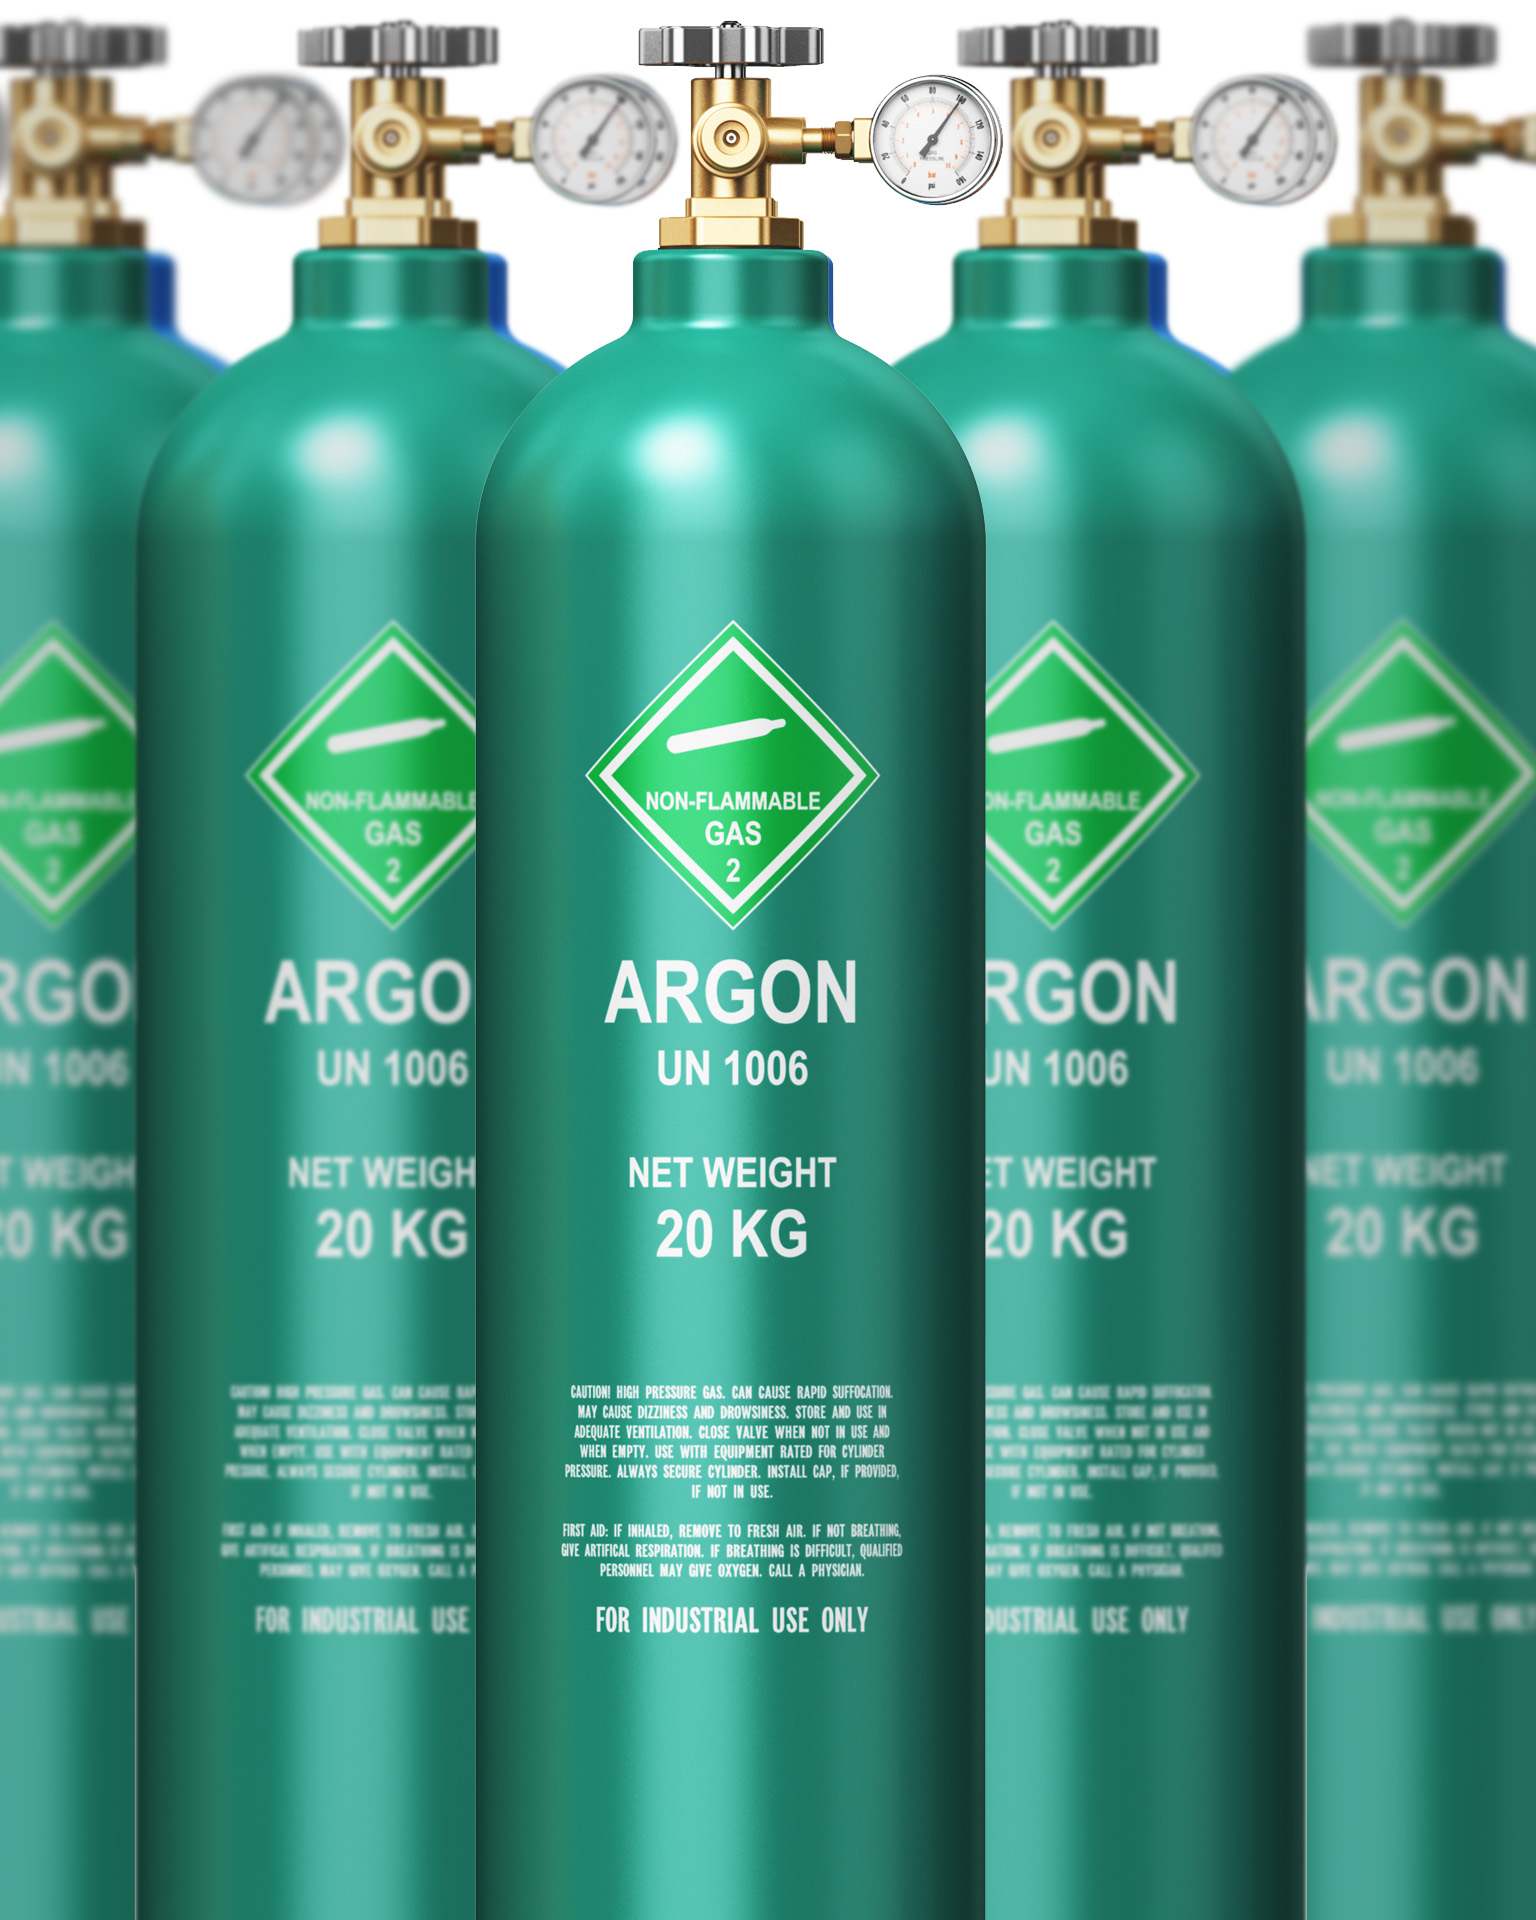 IMG - Web - Buy Argon